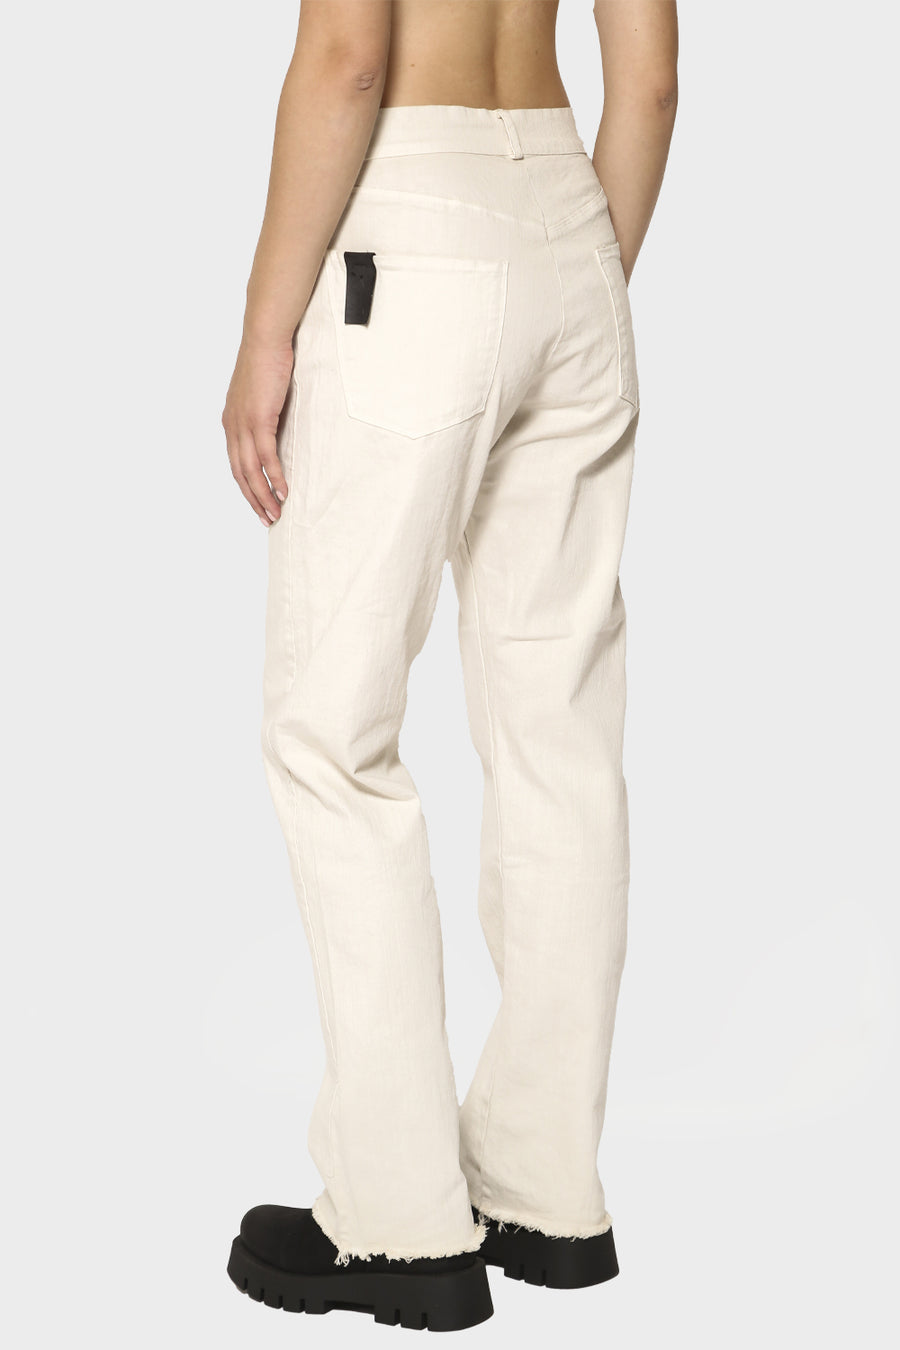 Pantalone Serie Numerica slim panna SN876